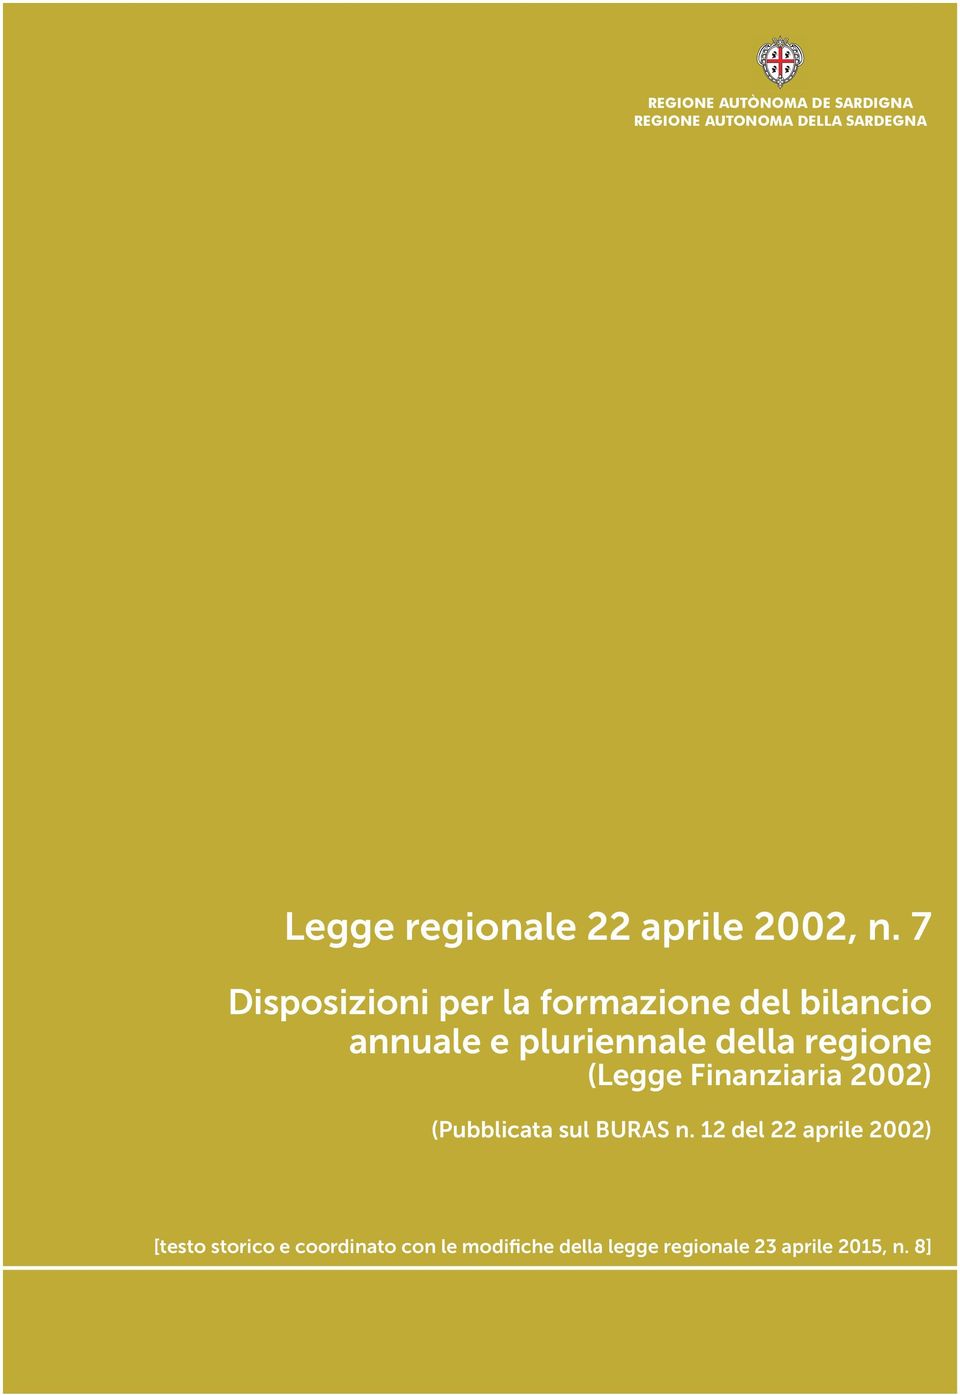 7 Disposizioni per la formazione del bilancio annuale e pluriennale della regione